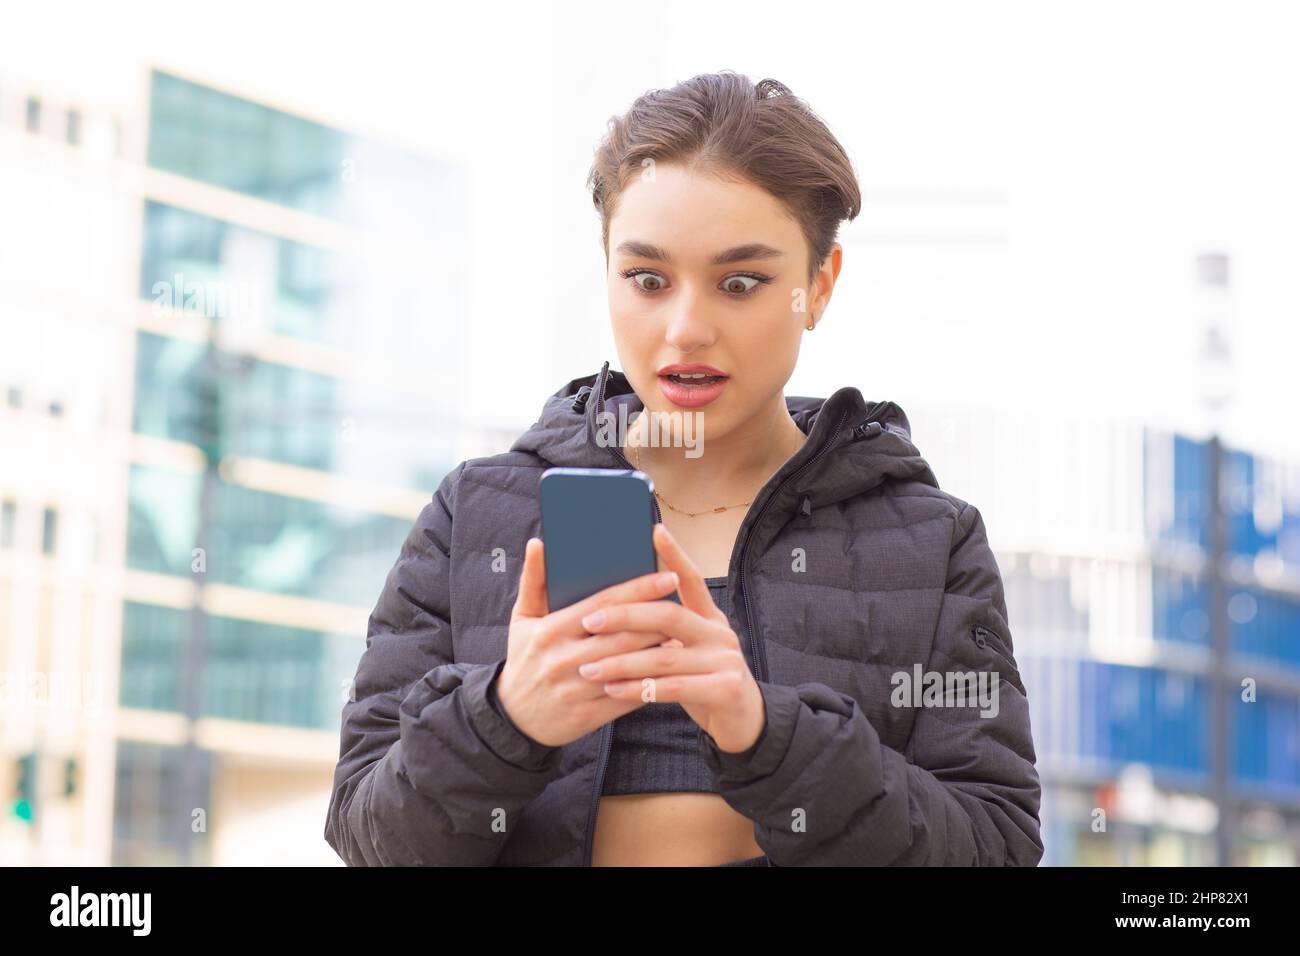 Retrato de una mujer sorprendida mirando su teléfono celular en un fondo de la ciudad Foto de stock